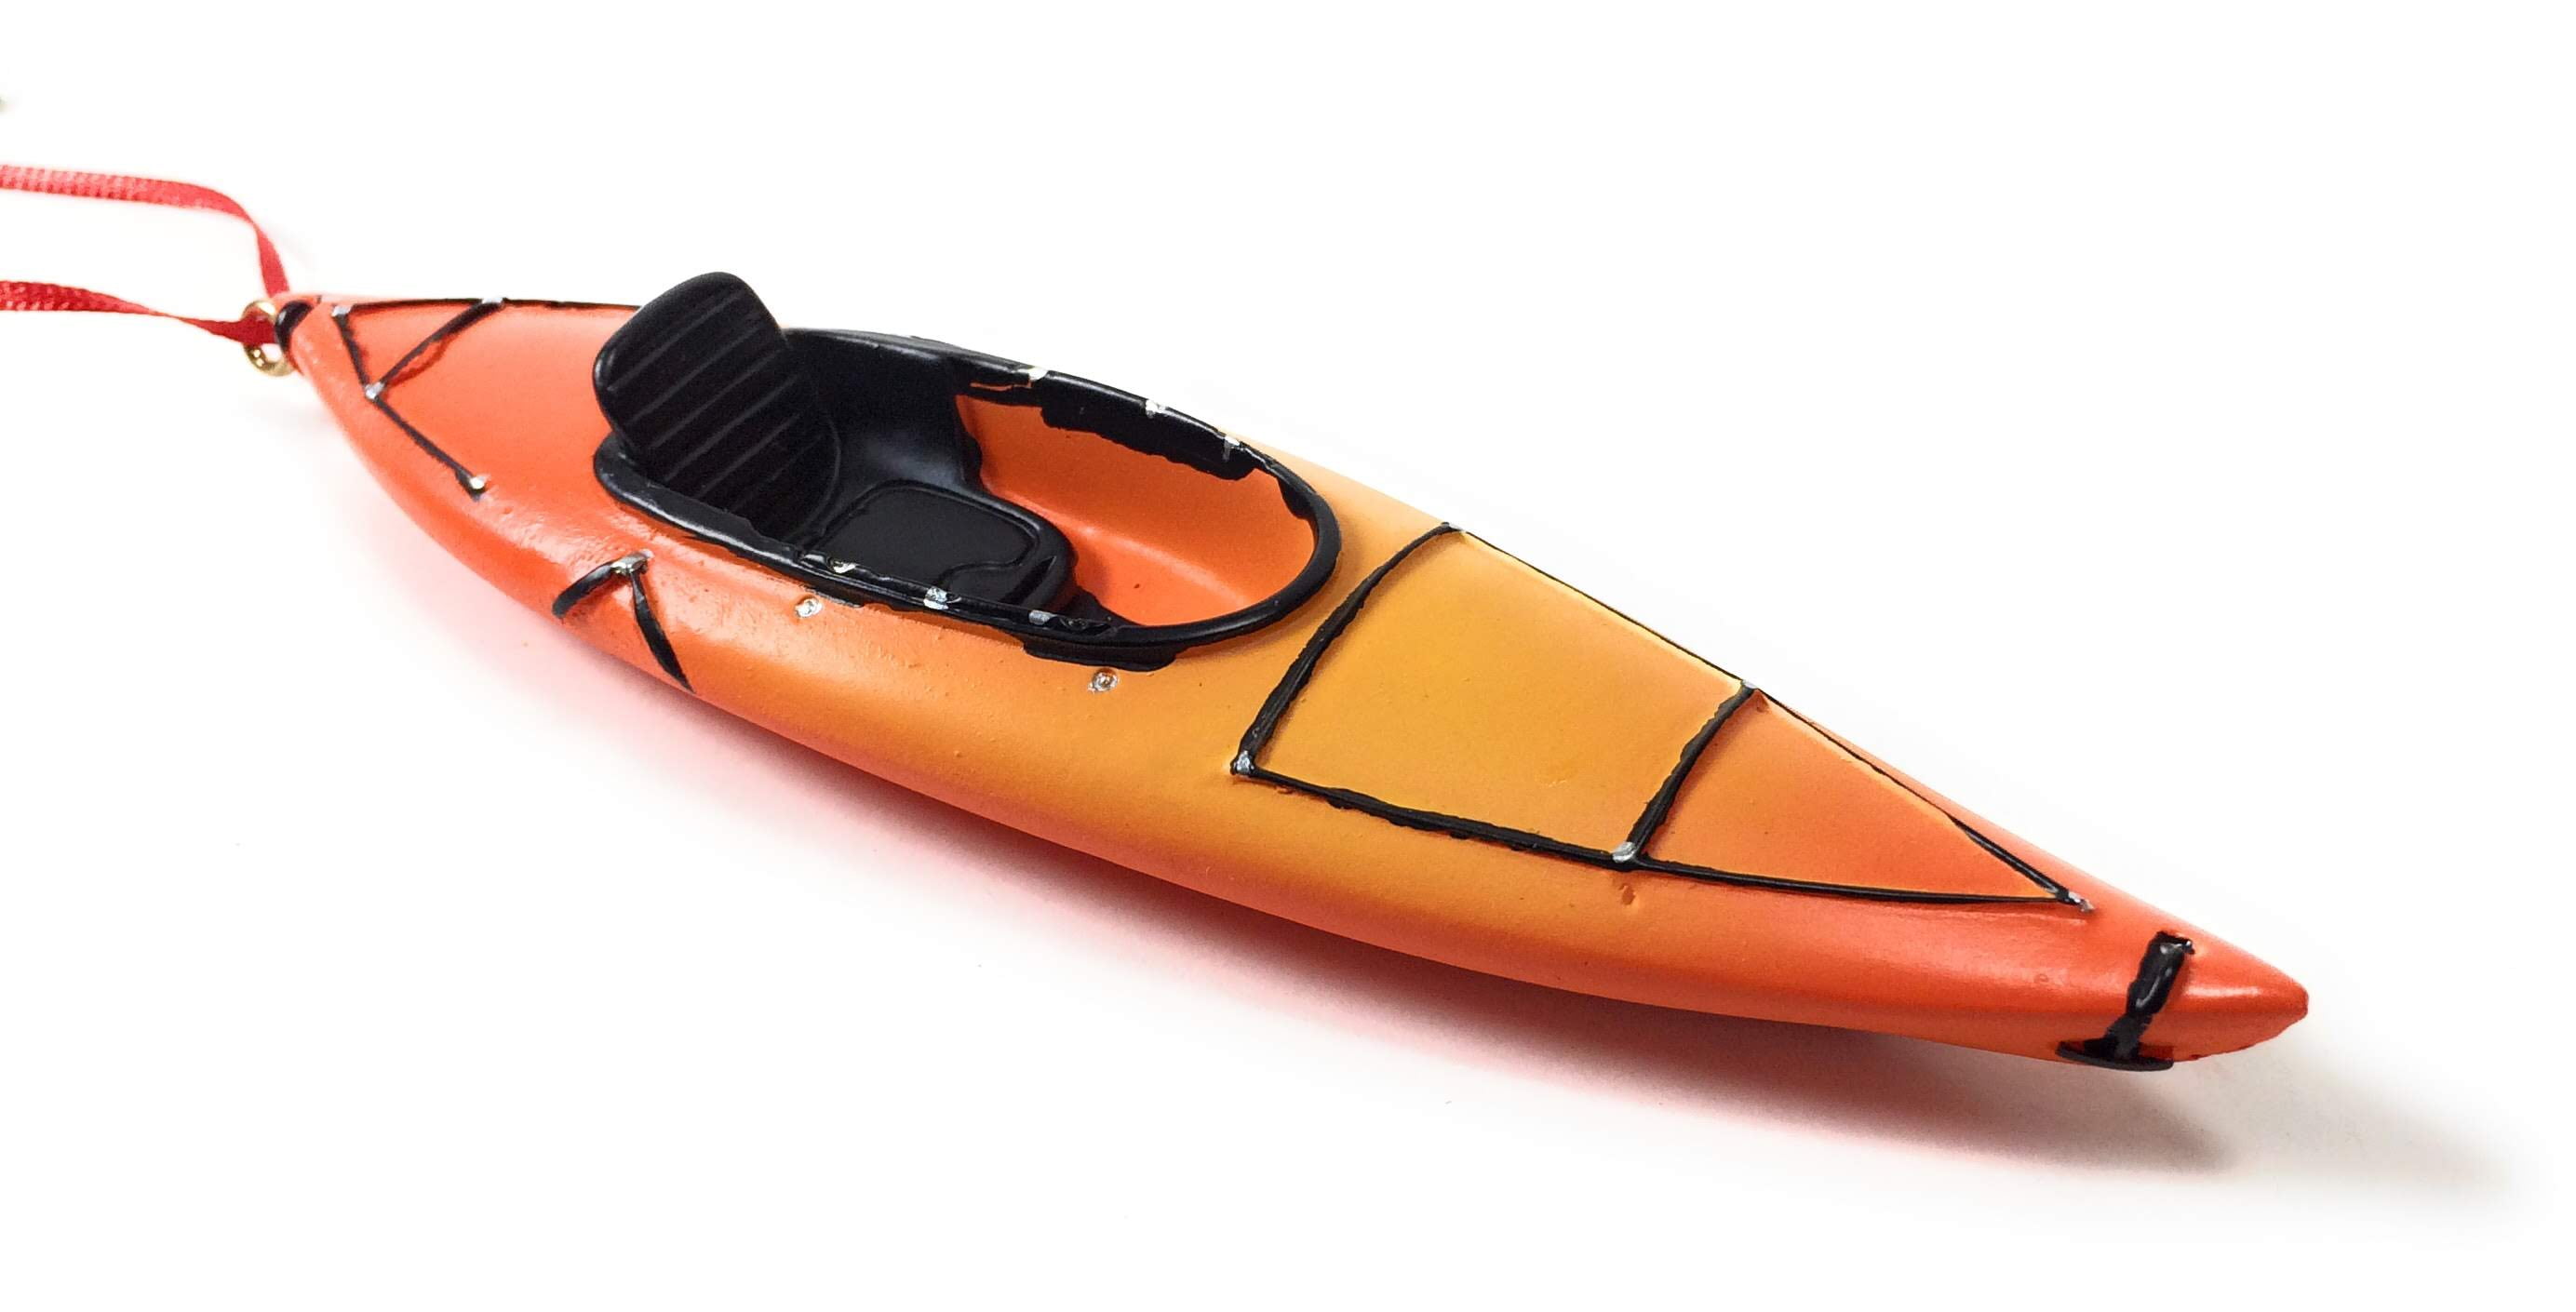 Paddle On Kayak Glass Christmas Ornament Xmas Holiday Sport 5.75" Long Gift 